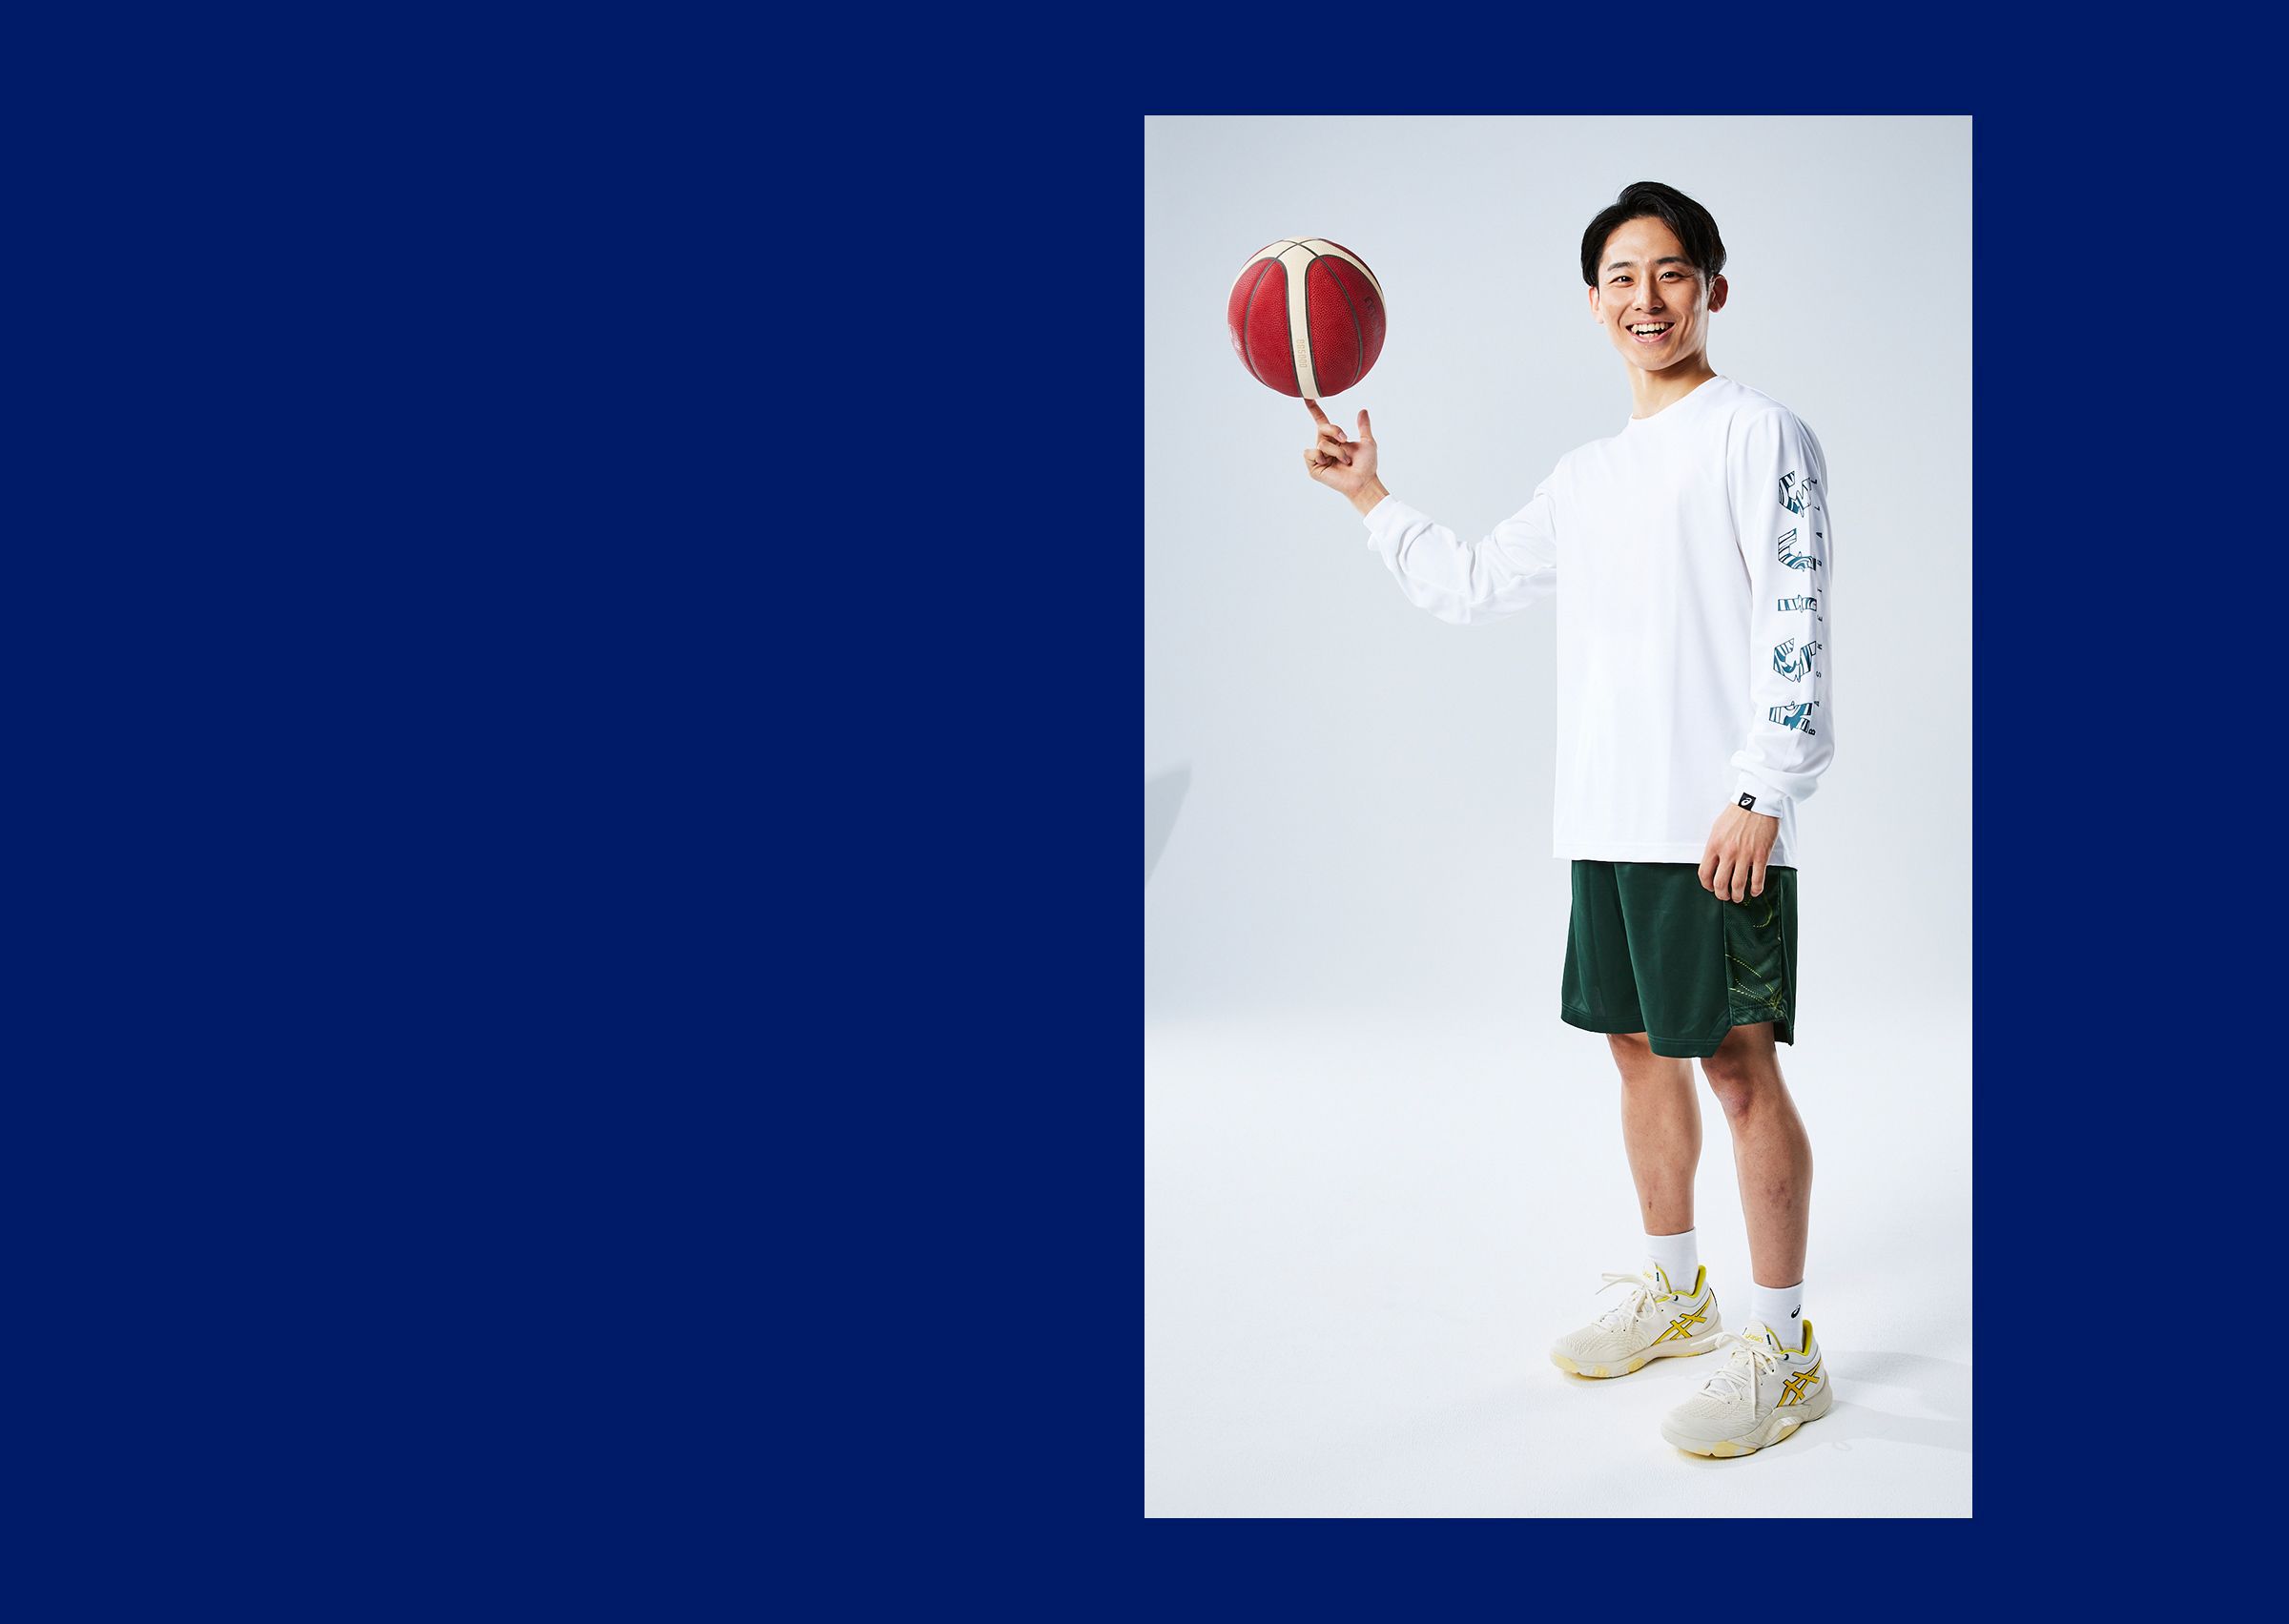 バスケットボール男子日本代表 河村 勇輝（かわむら ゆうき）選手